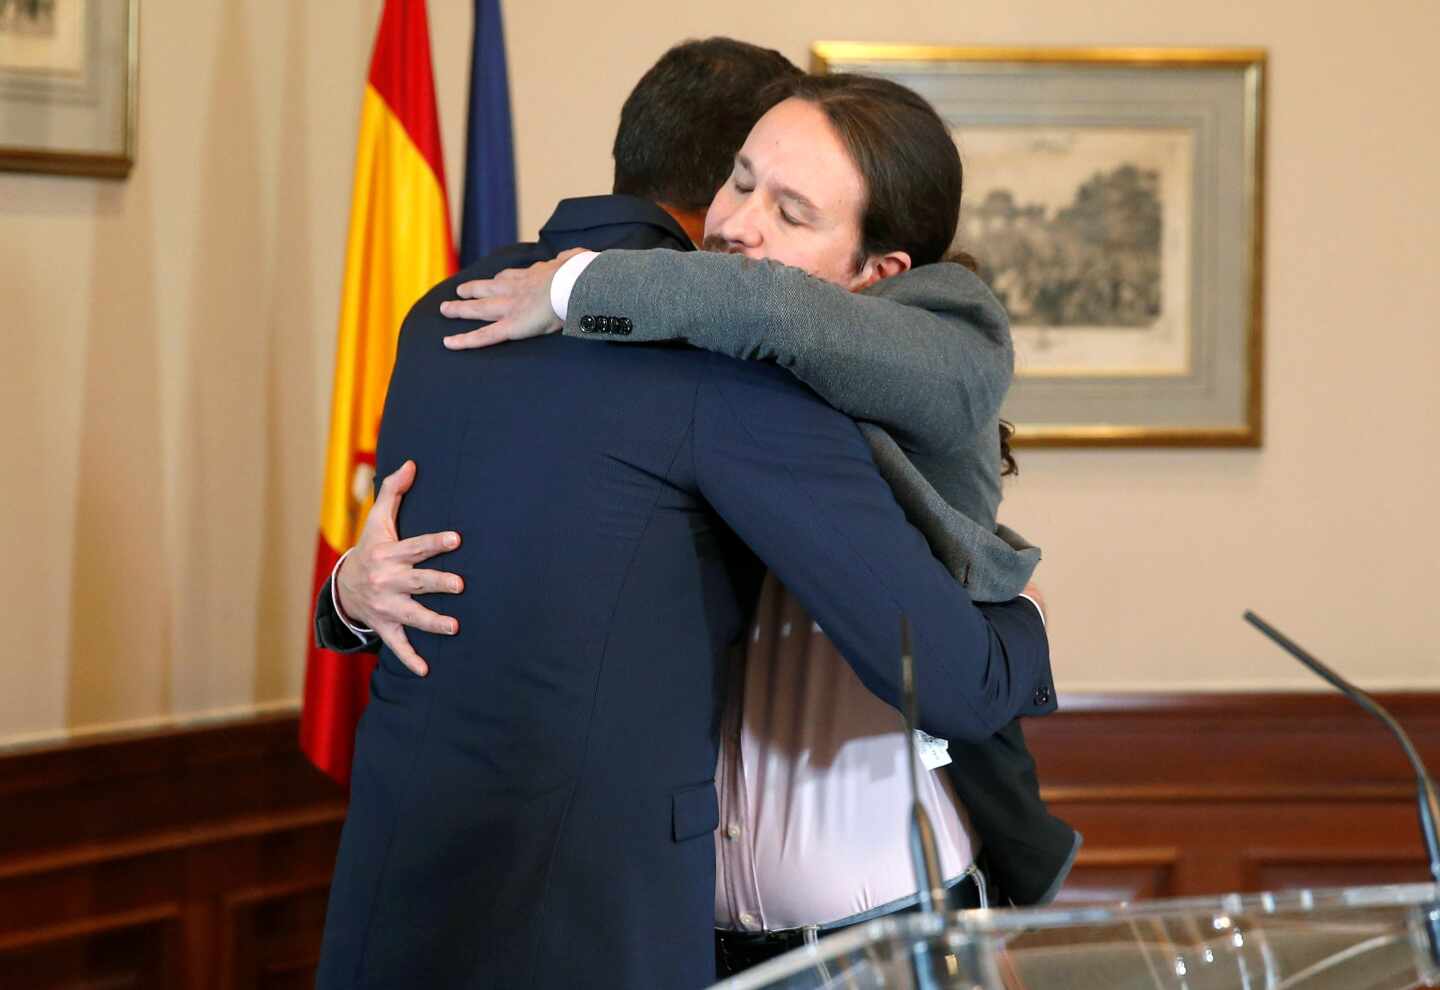 Iglesias gana el pulso a Sánchez y logra la coalición y su vicepresidencia